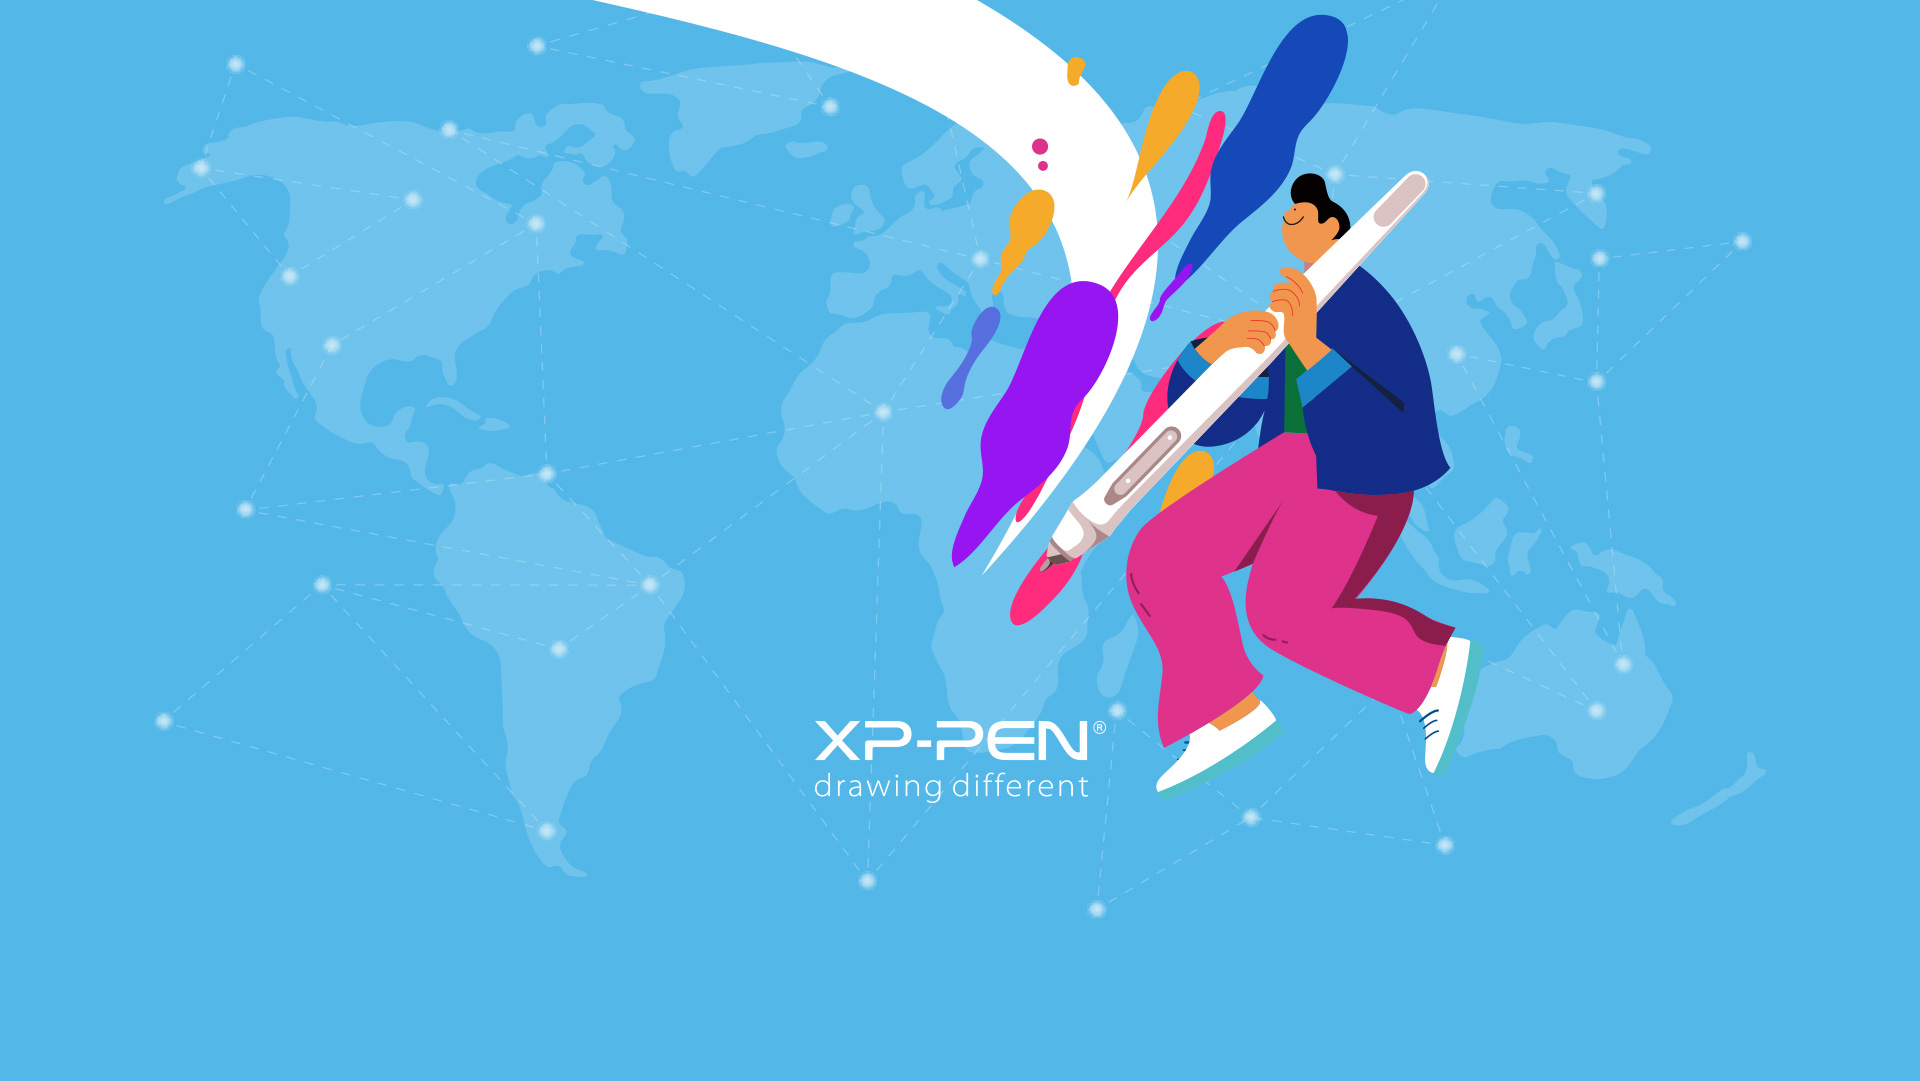 XP-PEN fête ses 15 ans